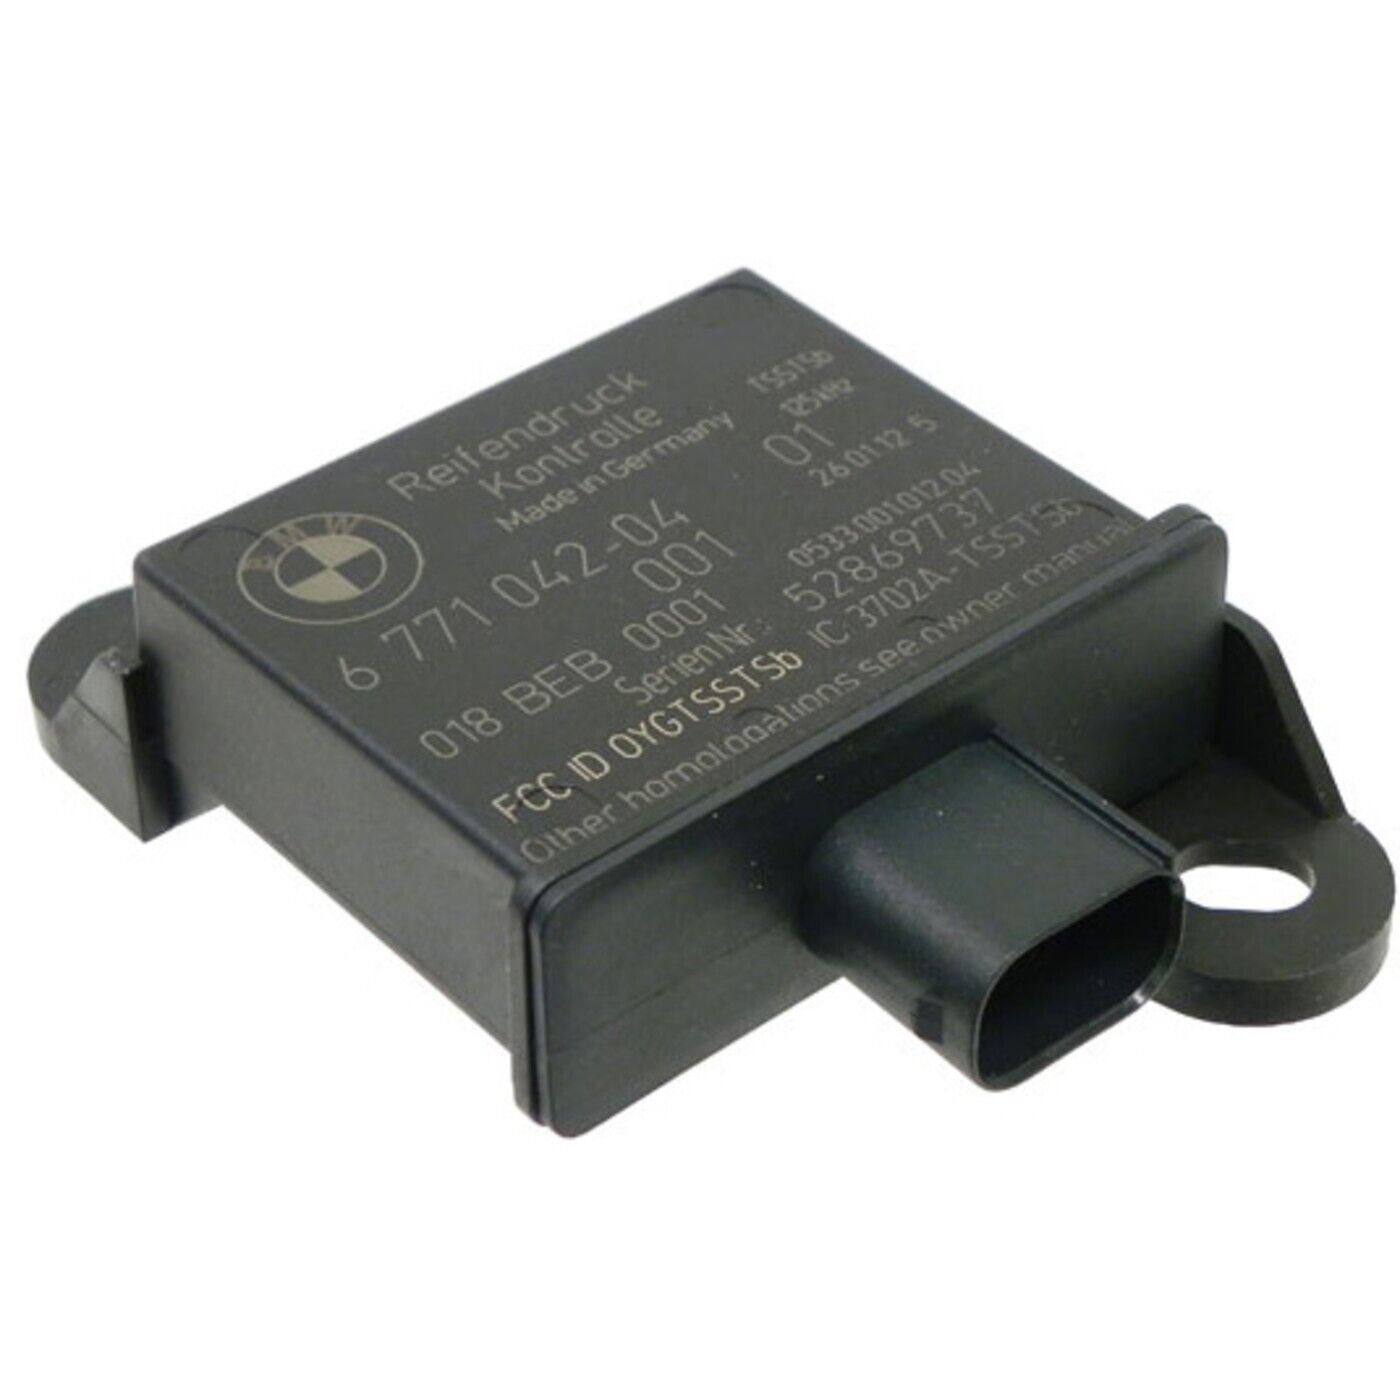 GenuineXL 36-23-6-771-042 TPMS Sensor Transmitter for 528 3 Series 550 328 650 6